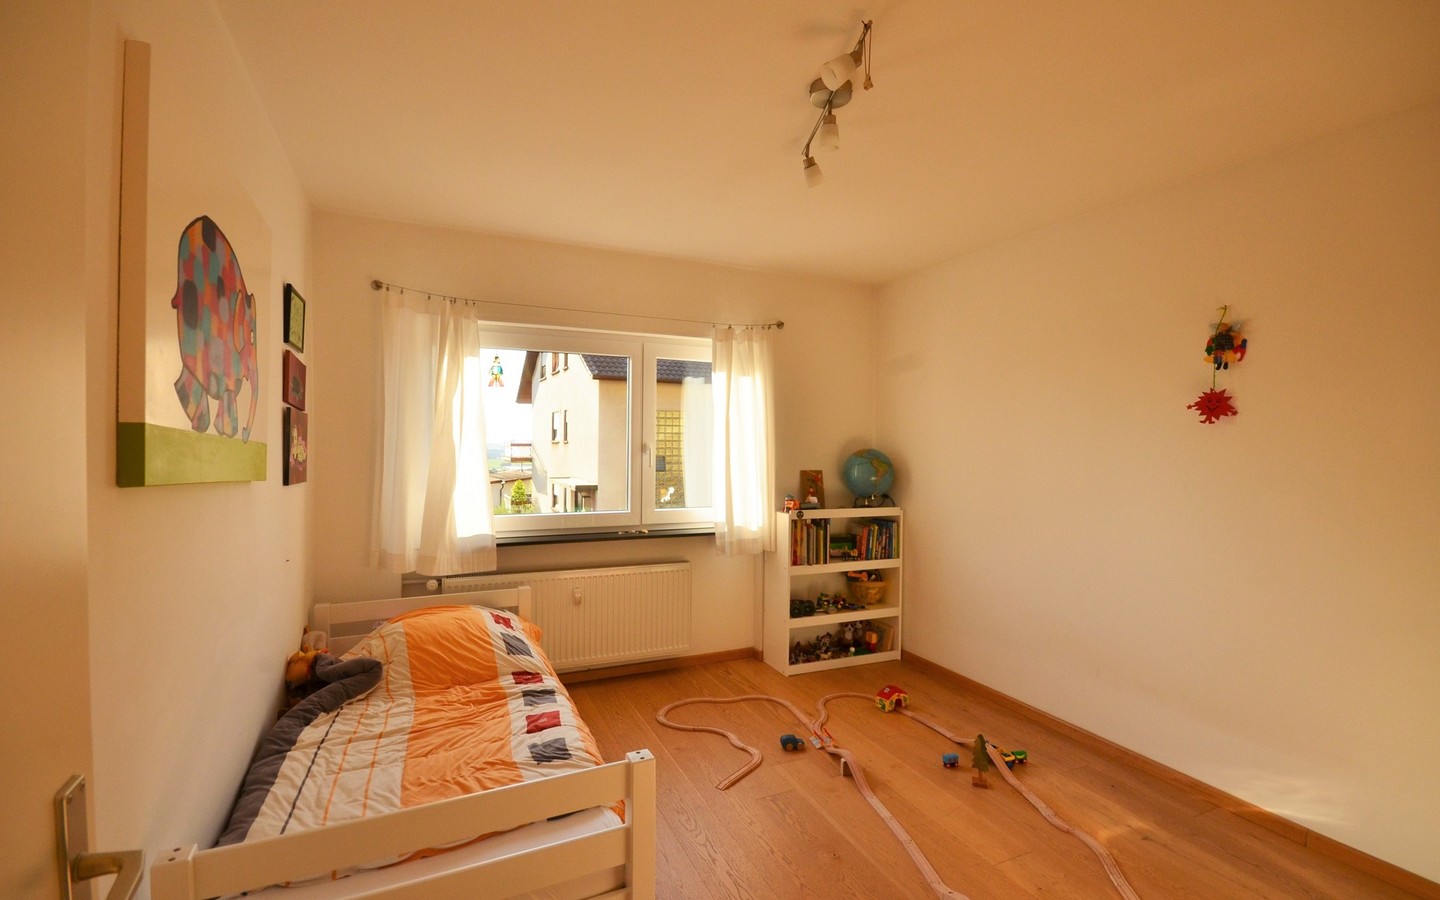 Weiteres Kinderzimmer - Schöne 4 Zimmerwohnung in ruhiger Lage von Dossenheim mit Garten